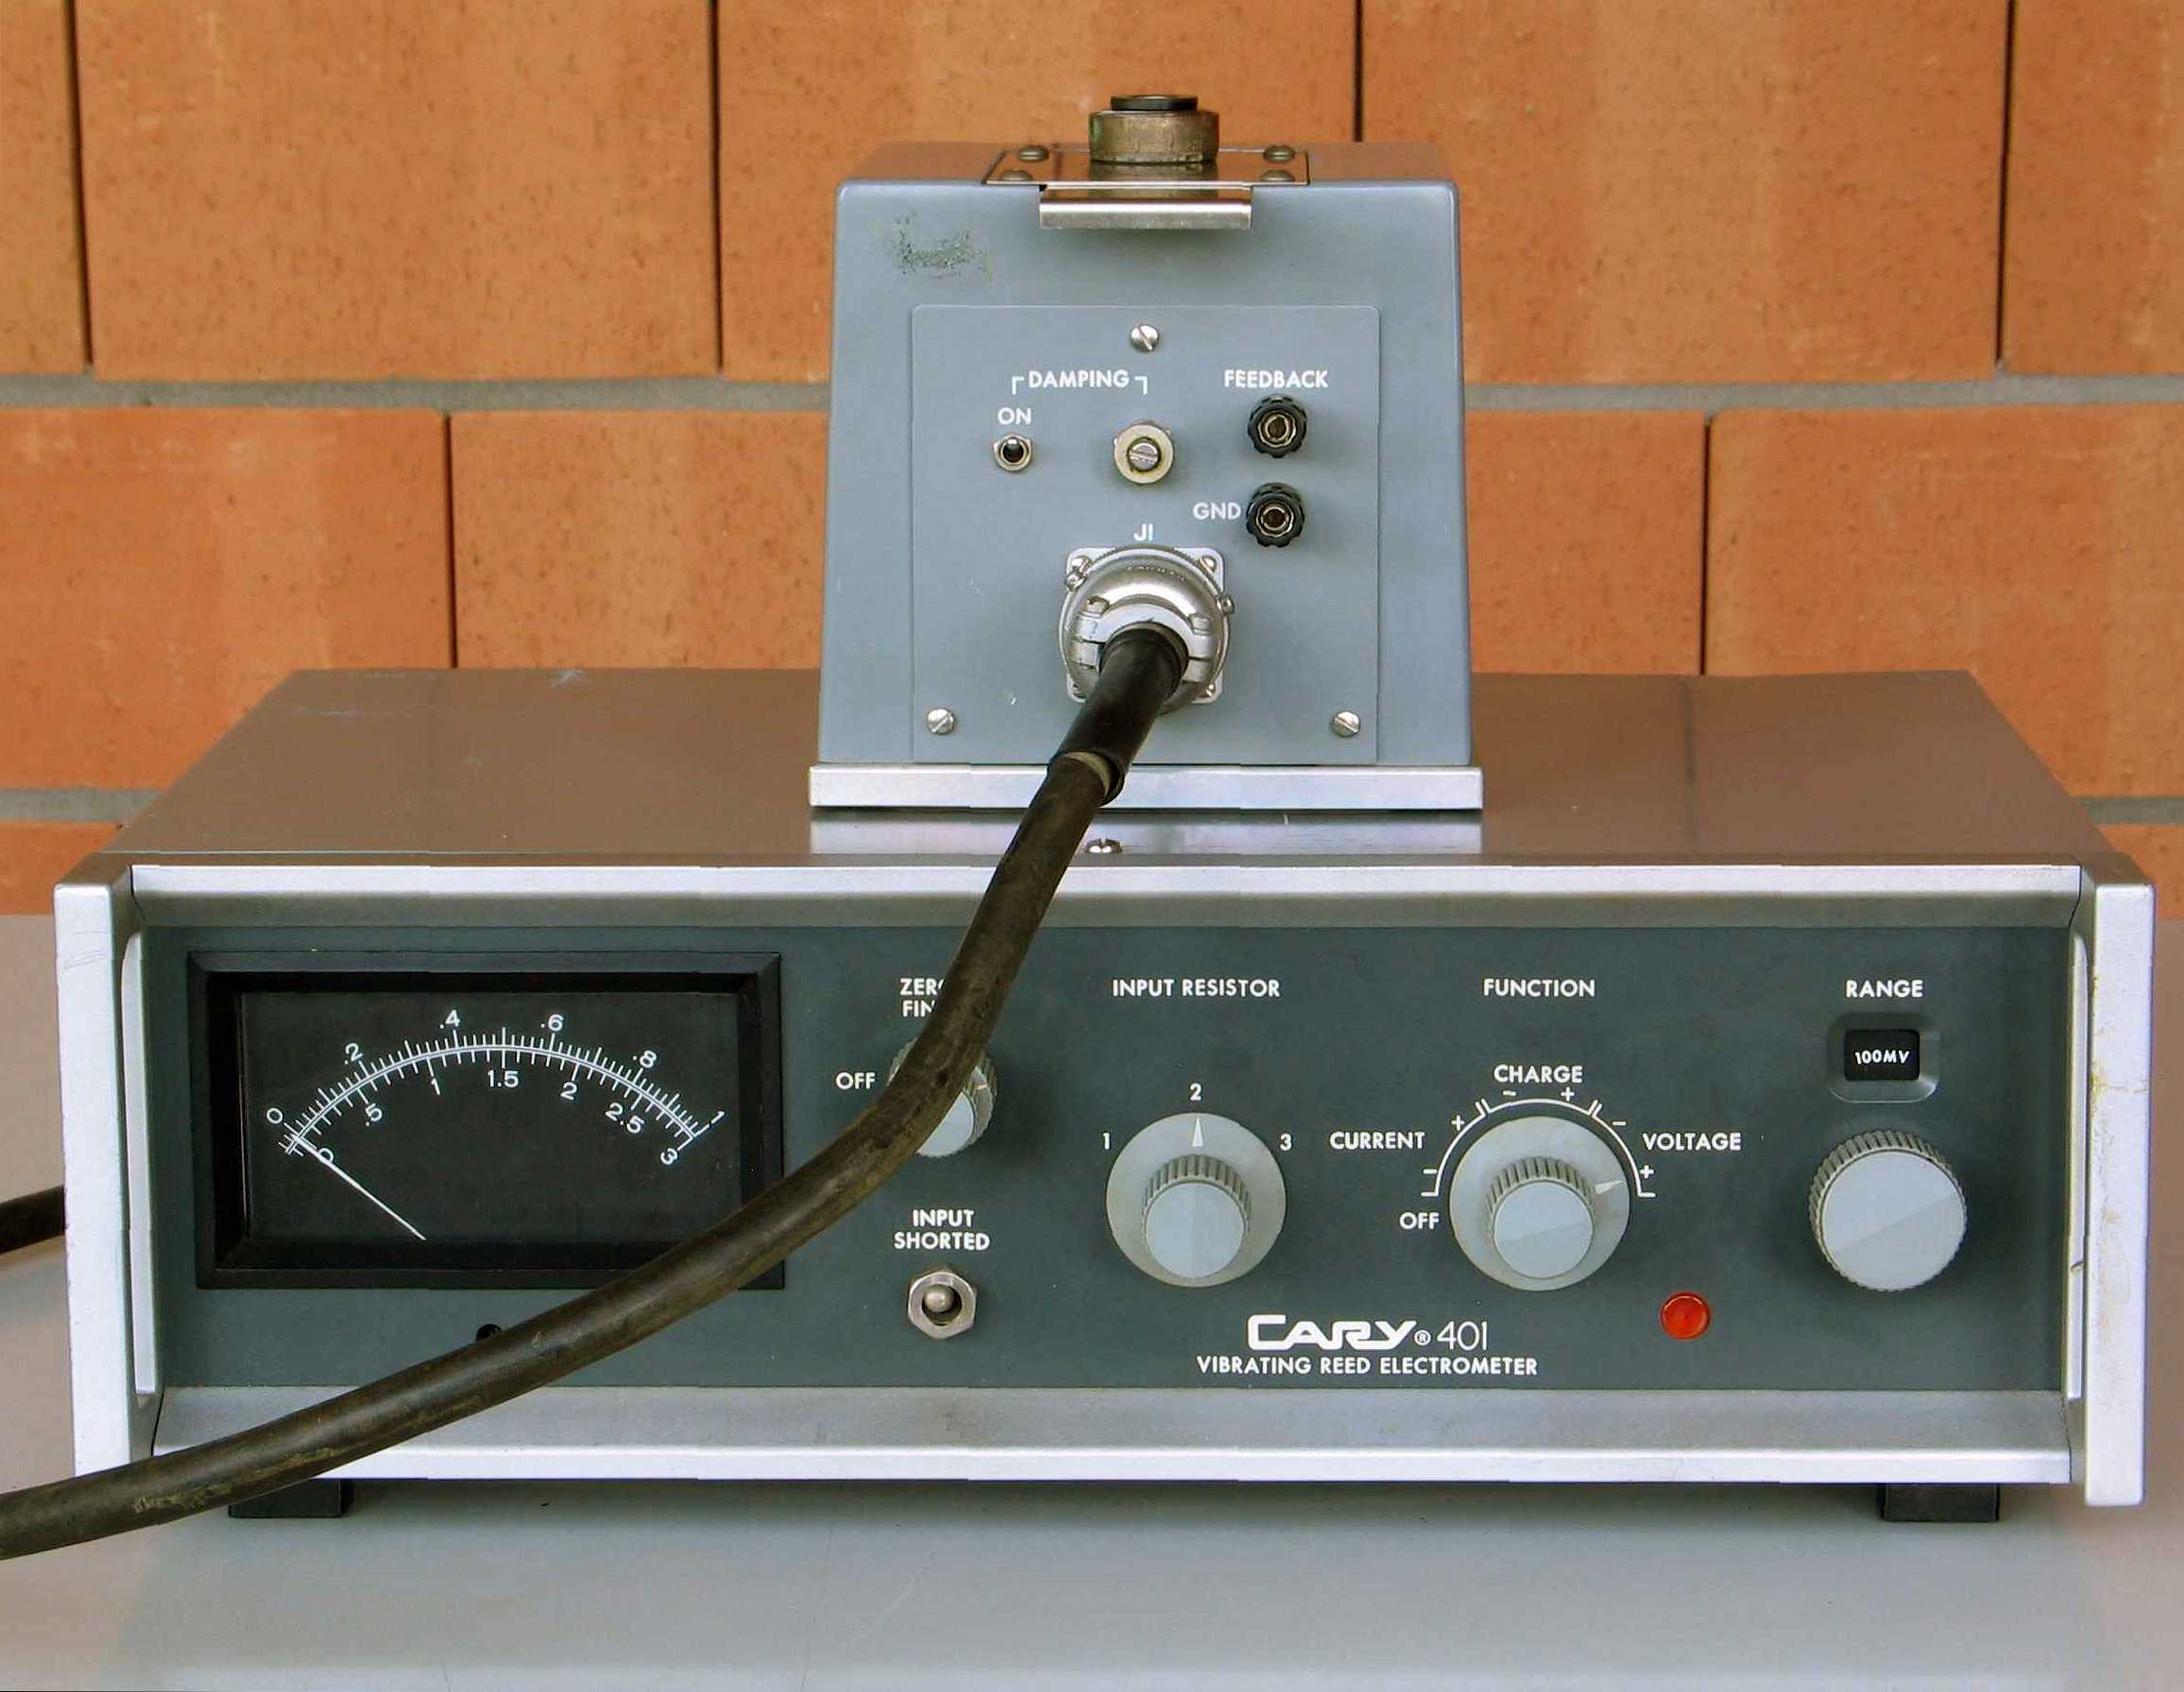 Électromètre à condensateur vibrant
(“Vibrating Reed Electrometer”)